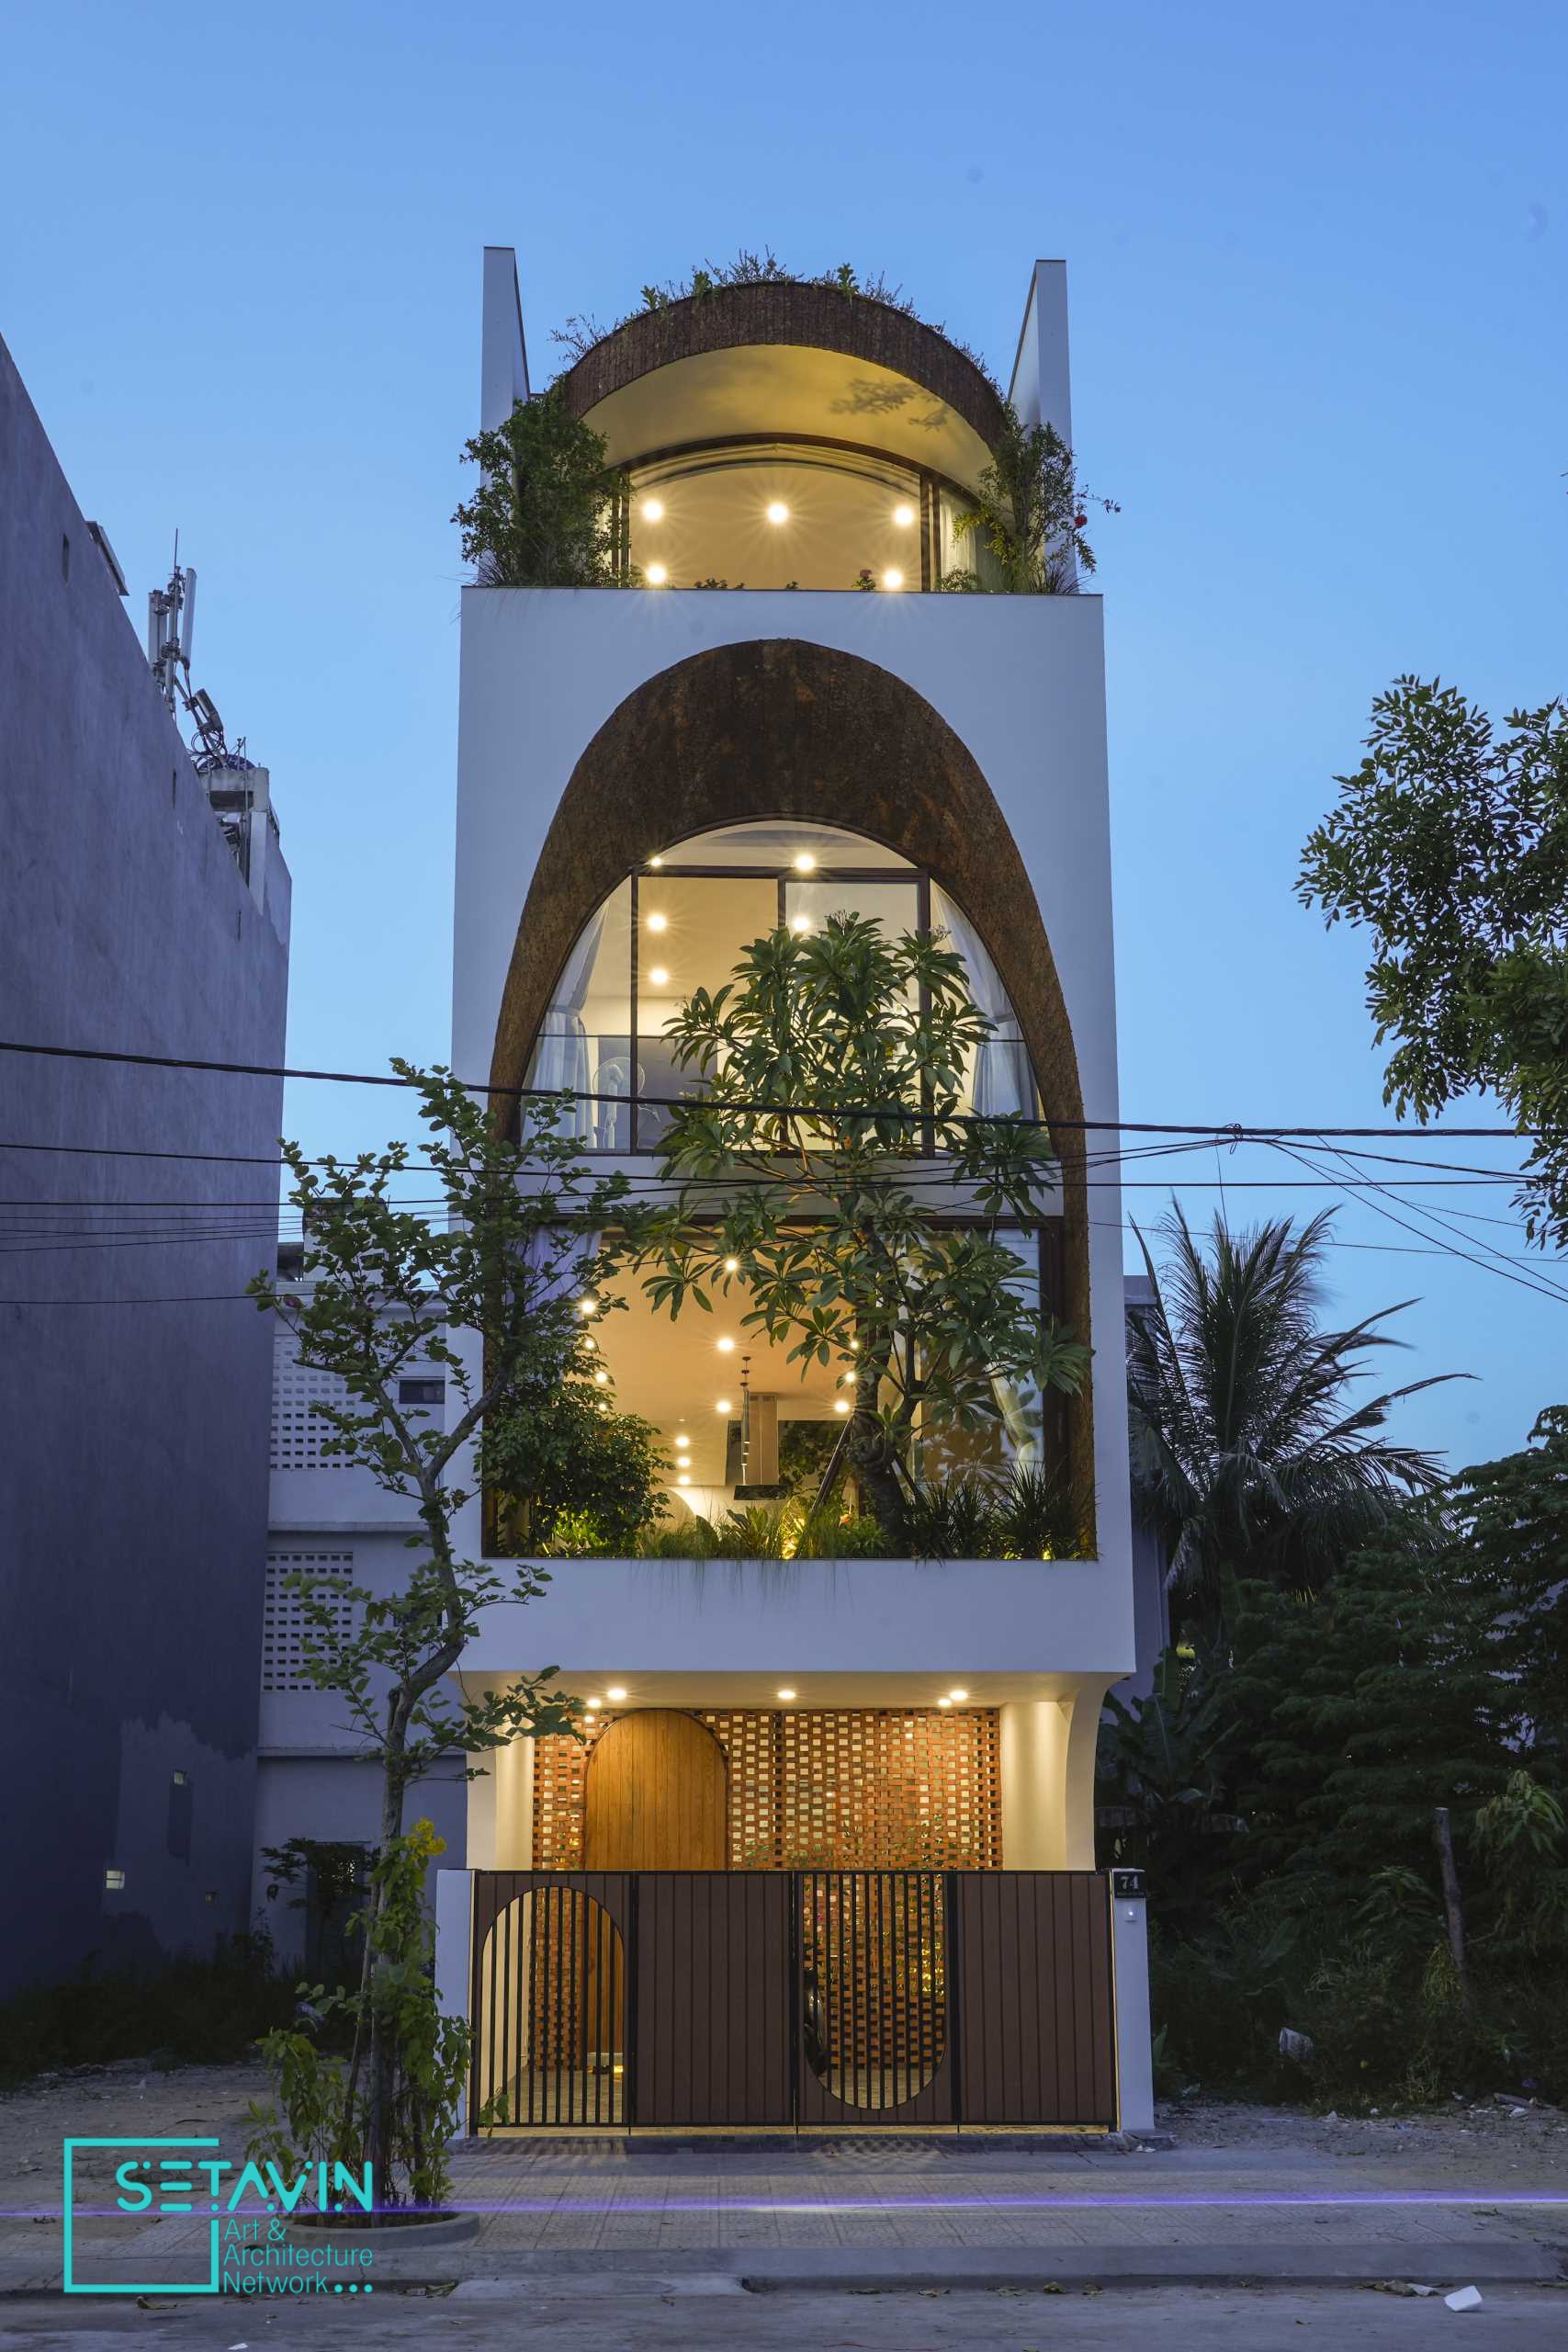 طراحی خانه ای مدرن ، استودیو 85 Design ،ویتنام